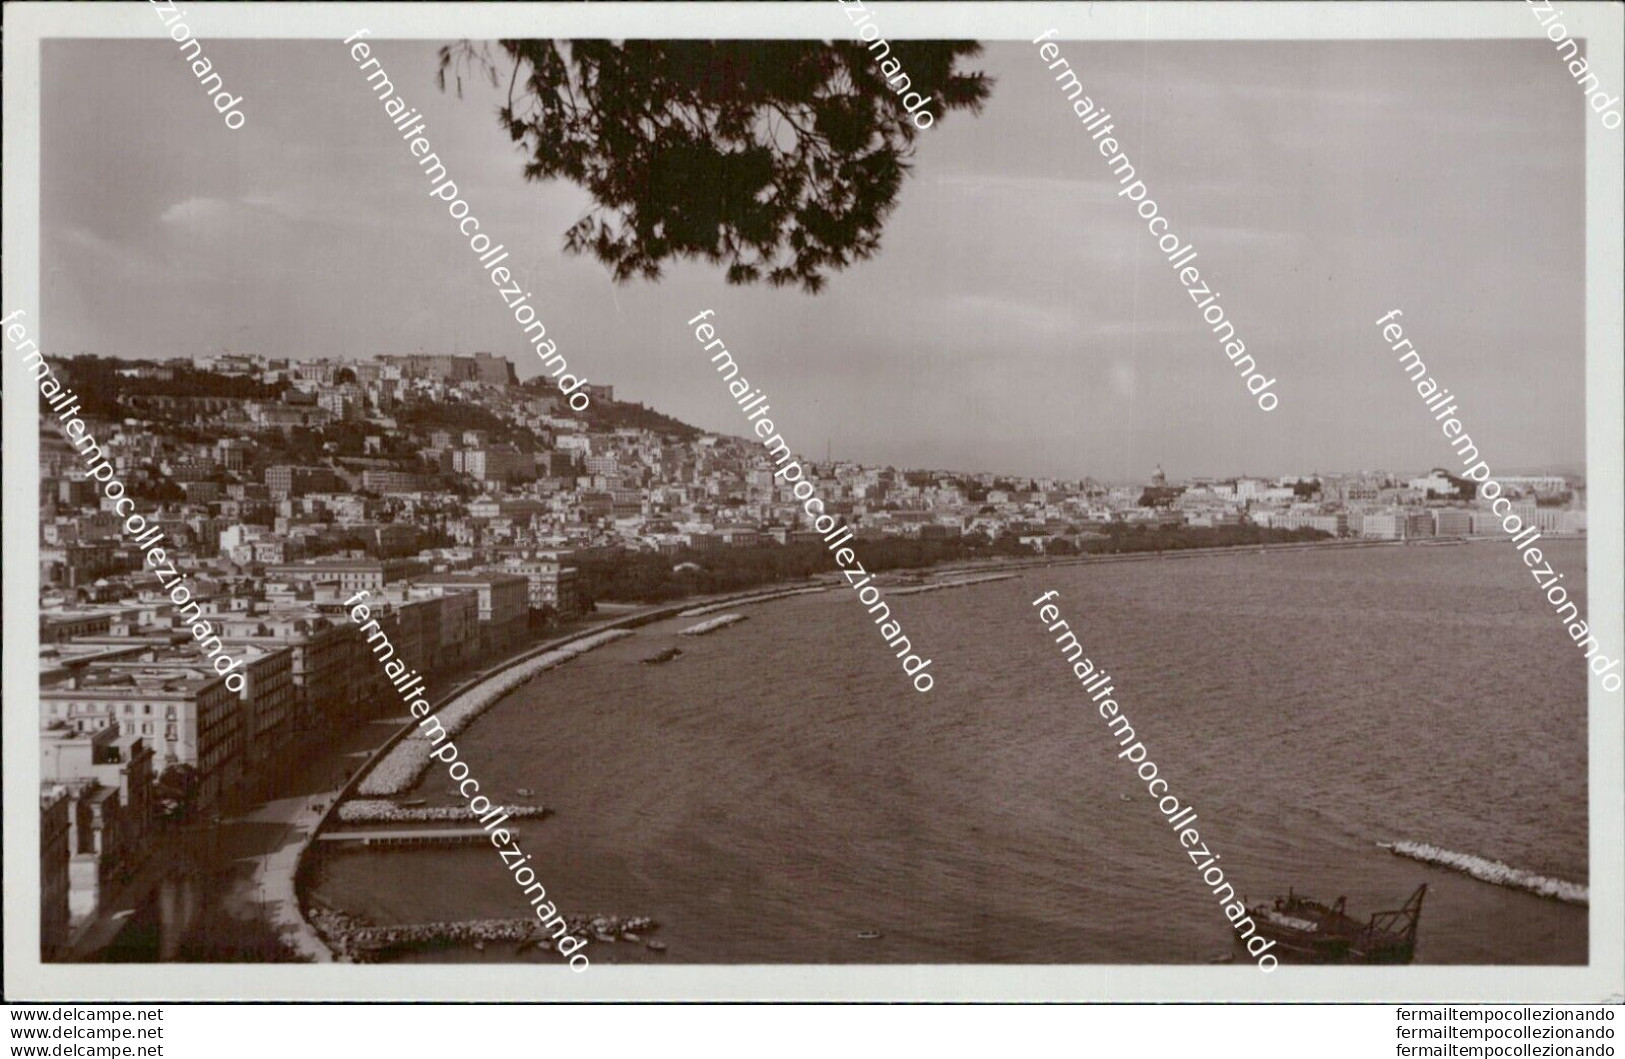 At531 Cartolina Napoli Citta' Posillipo Panorama Del Rione Sannazaro - Napoli (Neapel)